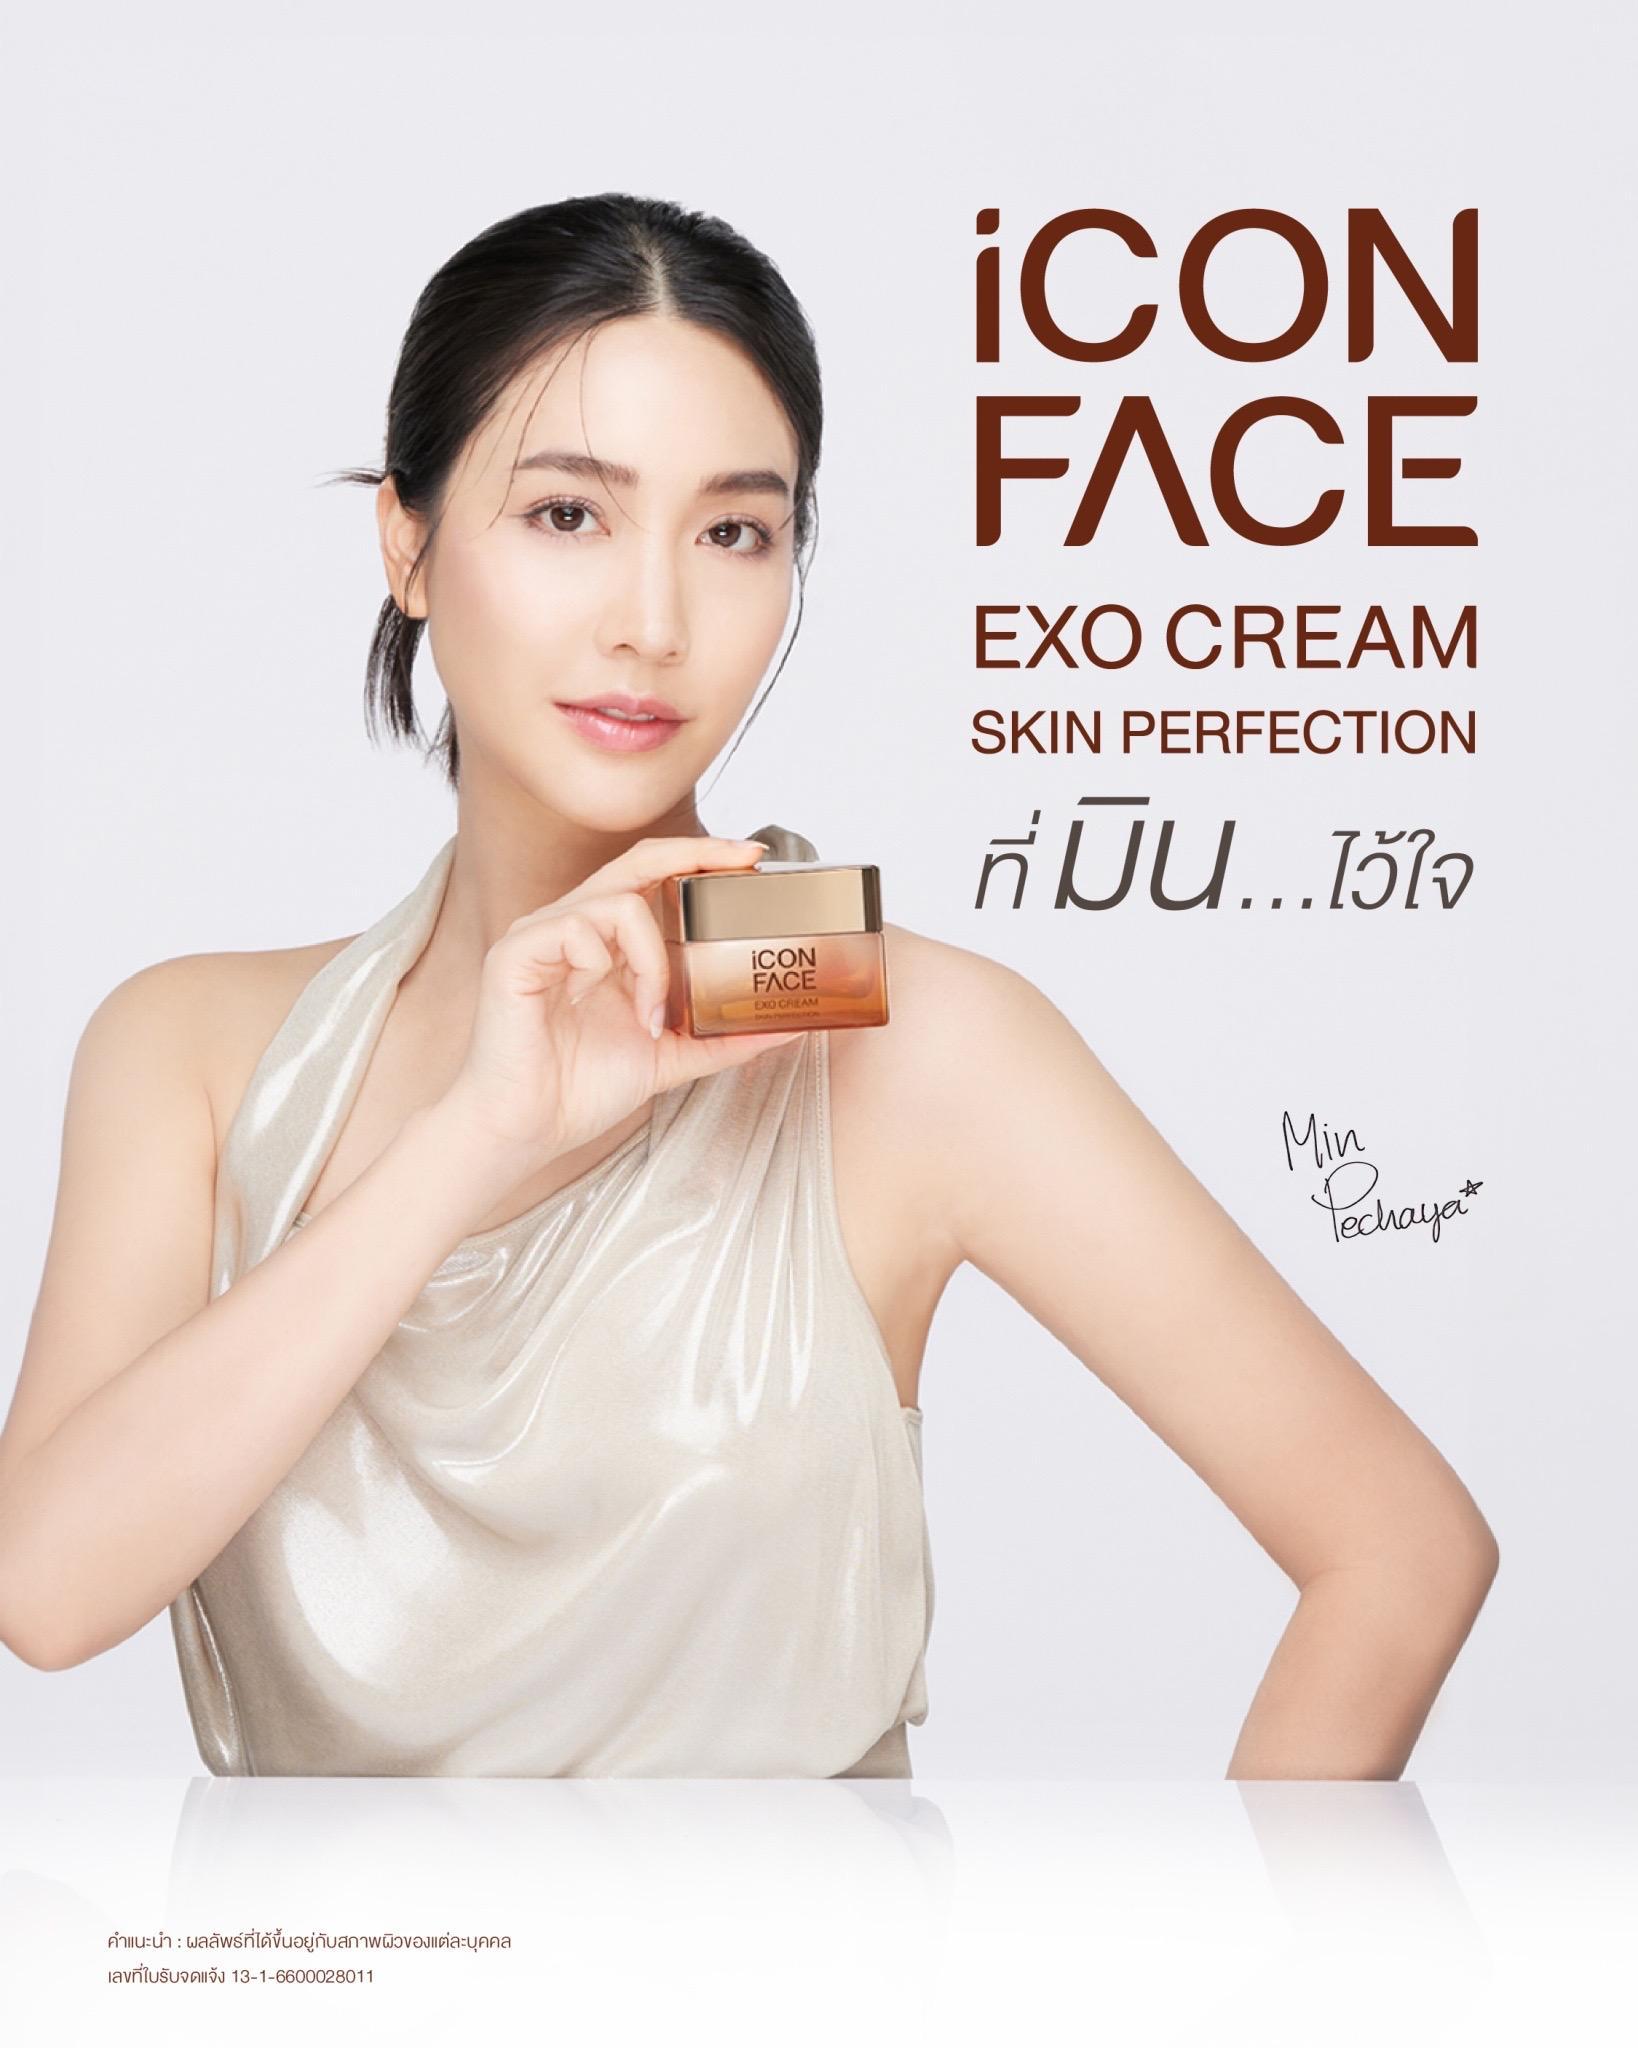 ภาพหน้าปก ครีมหน้าฉ่ำ iCon Face Exo Cream Skin Perfection ผลิตภัณฑ์ดูแลผิวหน้าเกรดพรีเมี่ยม ที่:1